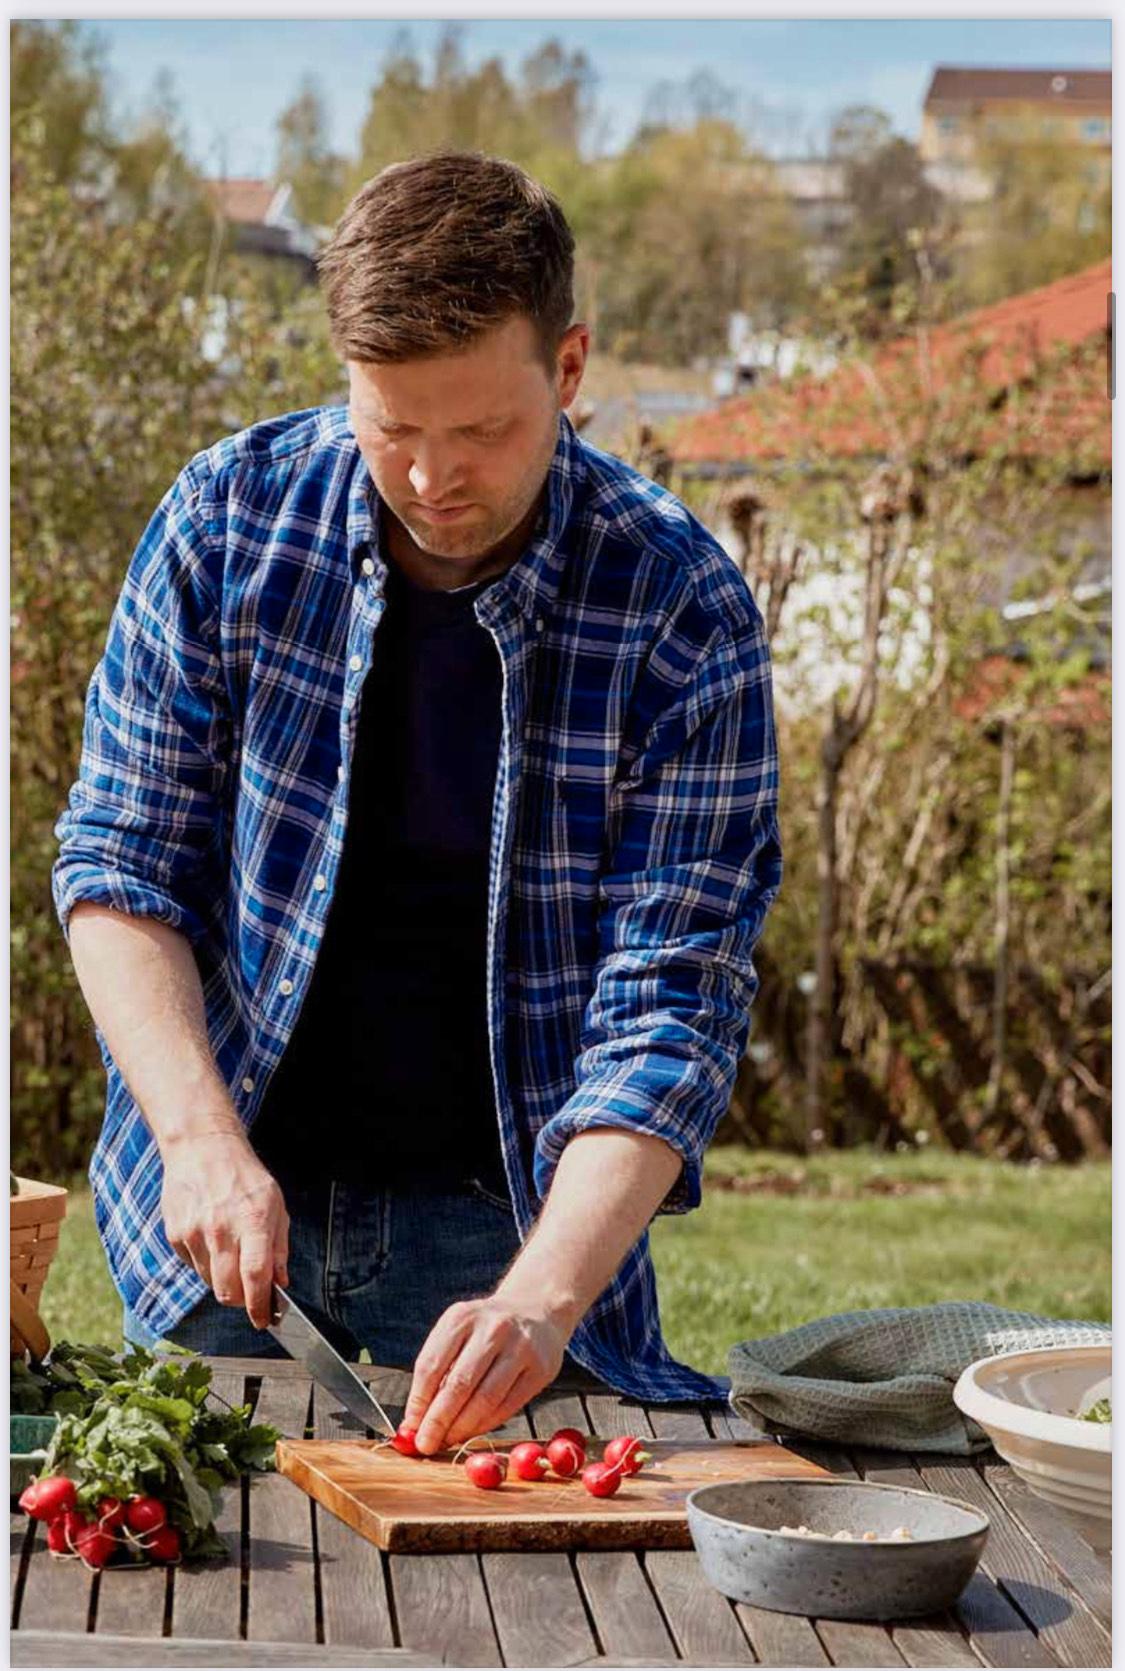 BRUK RESTENE: Kristoffer råder til å ta vare på grønnsaksskal i fryseren, så det kan brukes til å koke buljong.